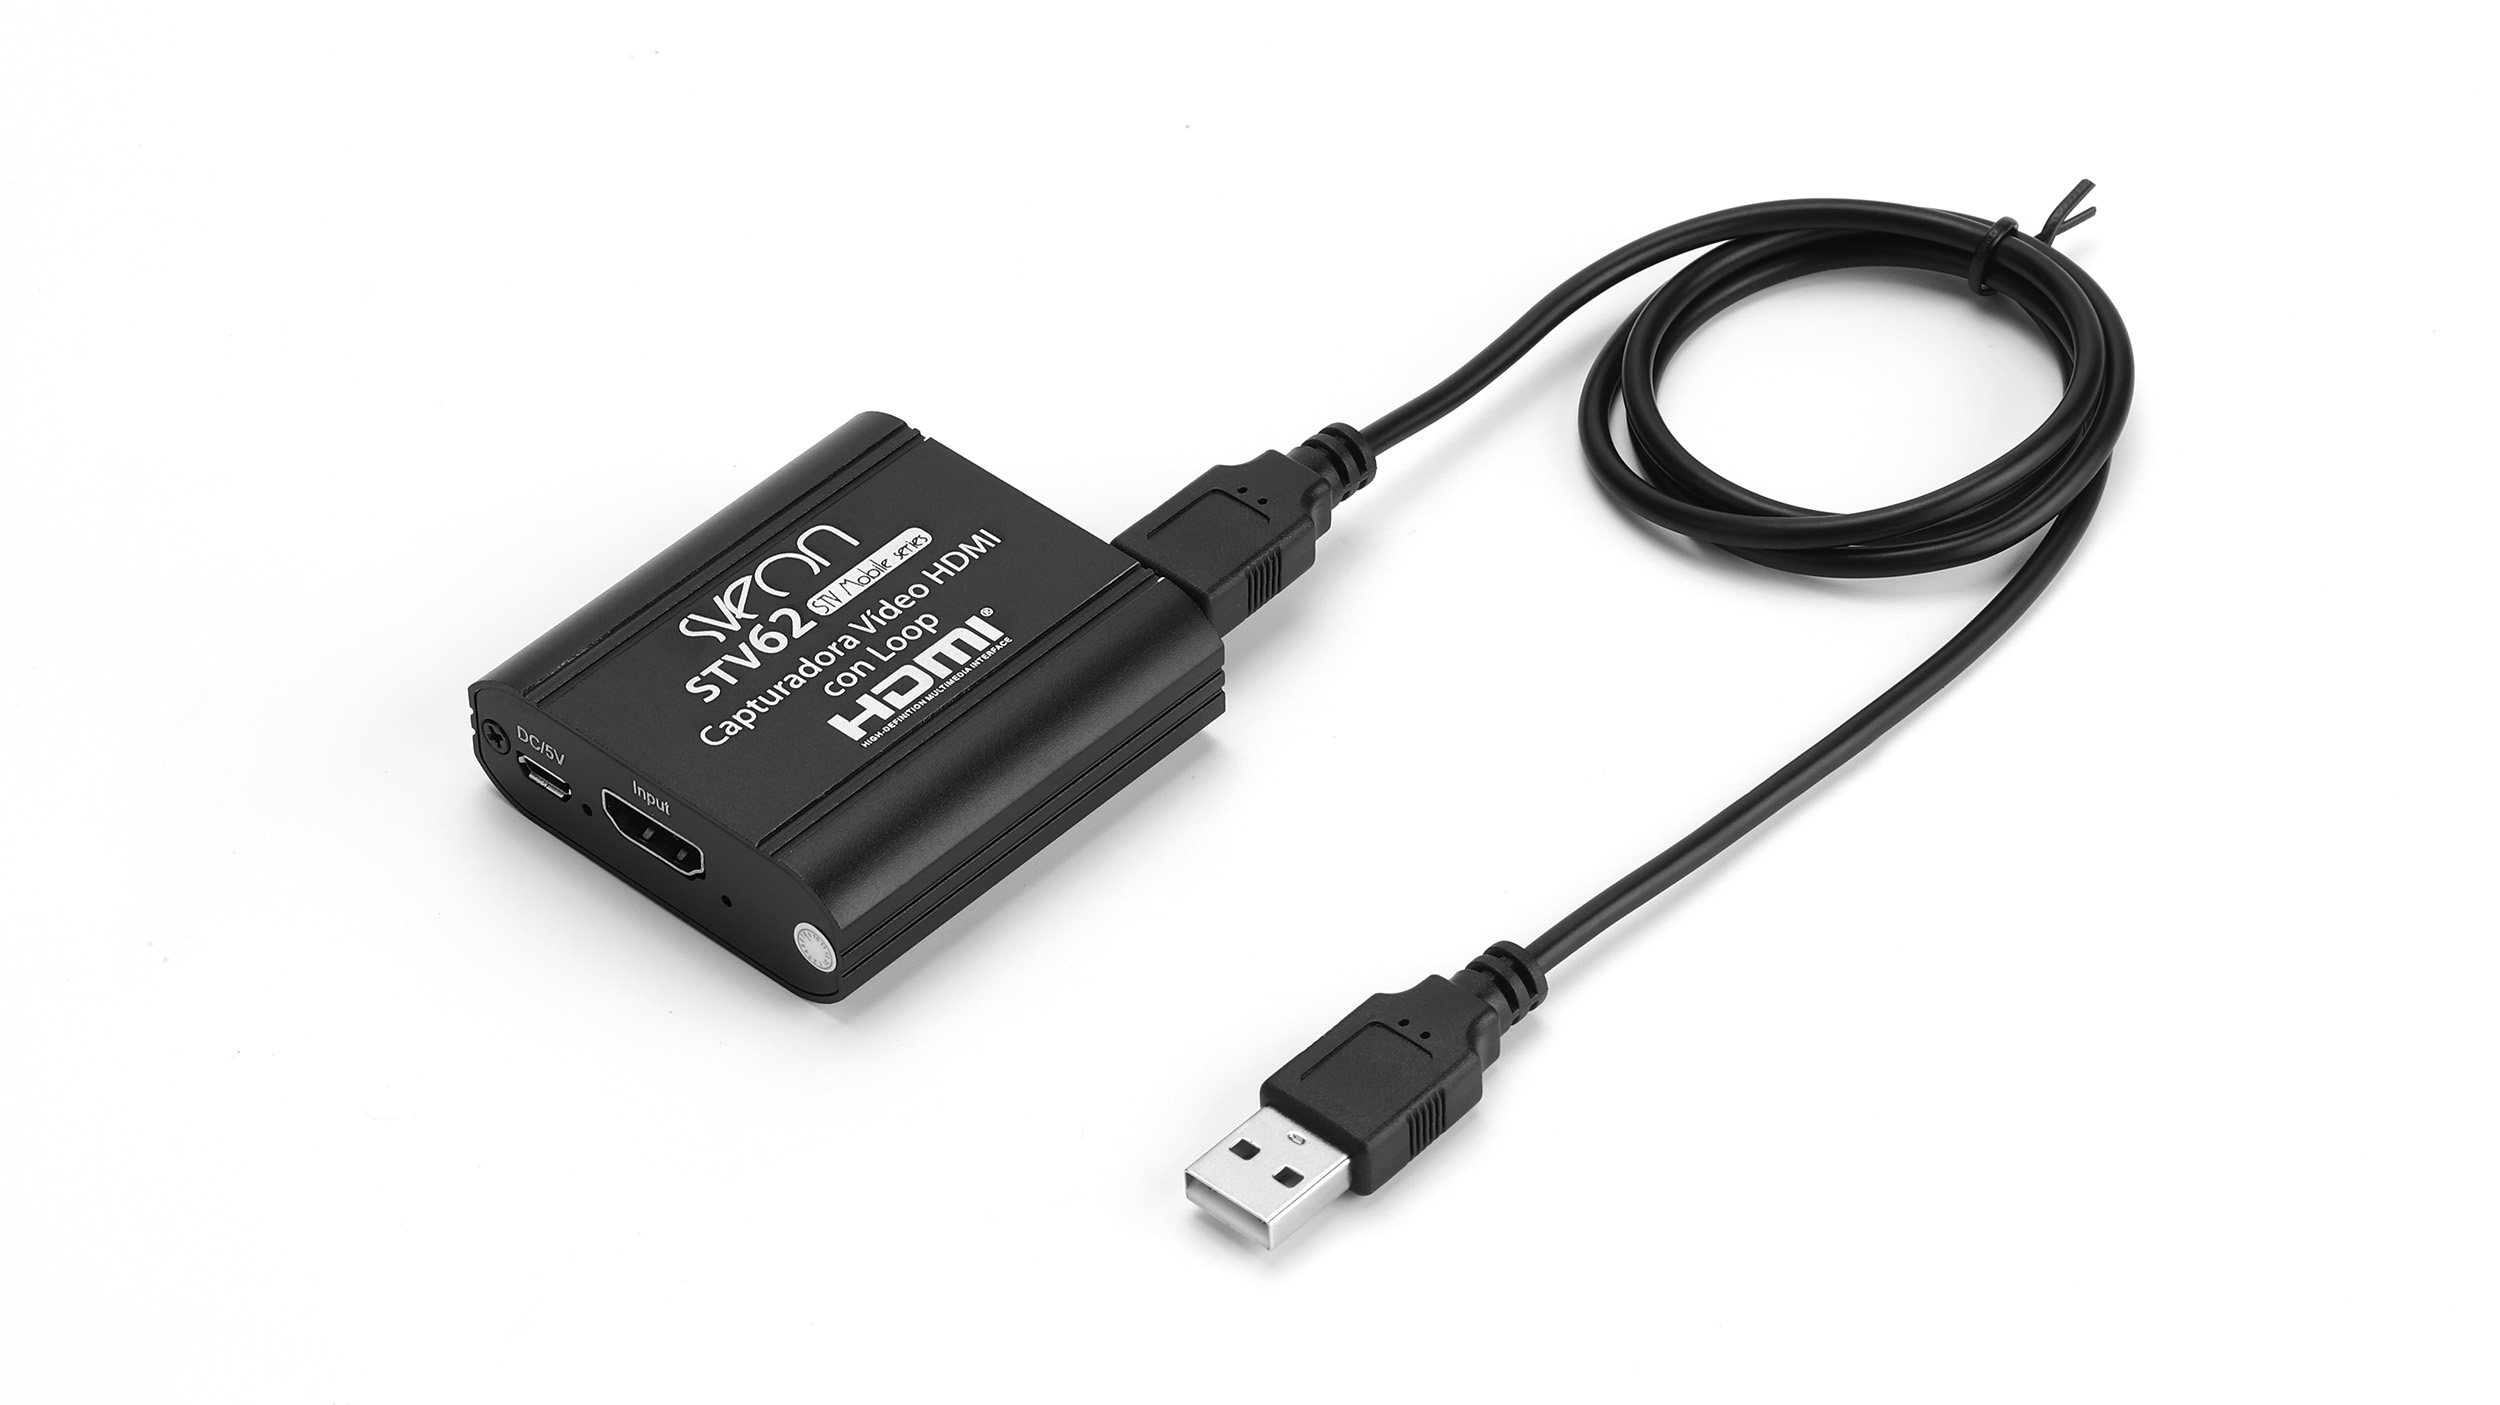 Sveon STV62 - Capturadora USB HDMI 4k con Loop Out